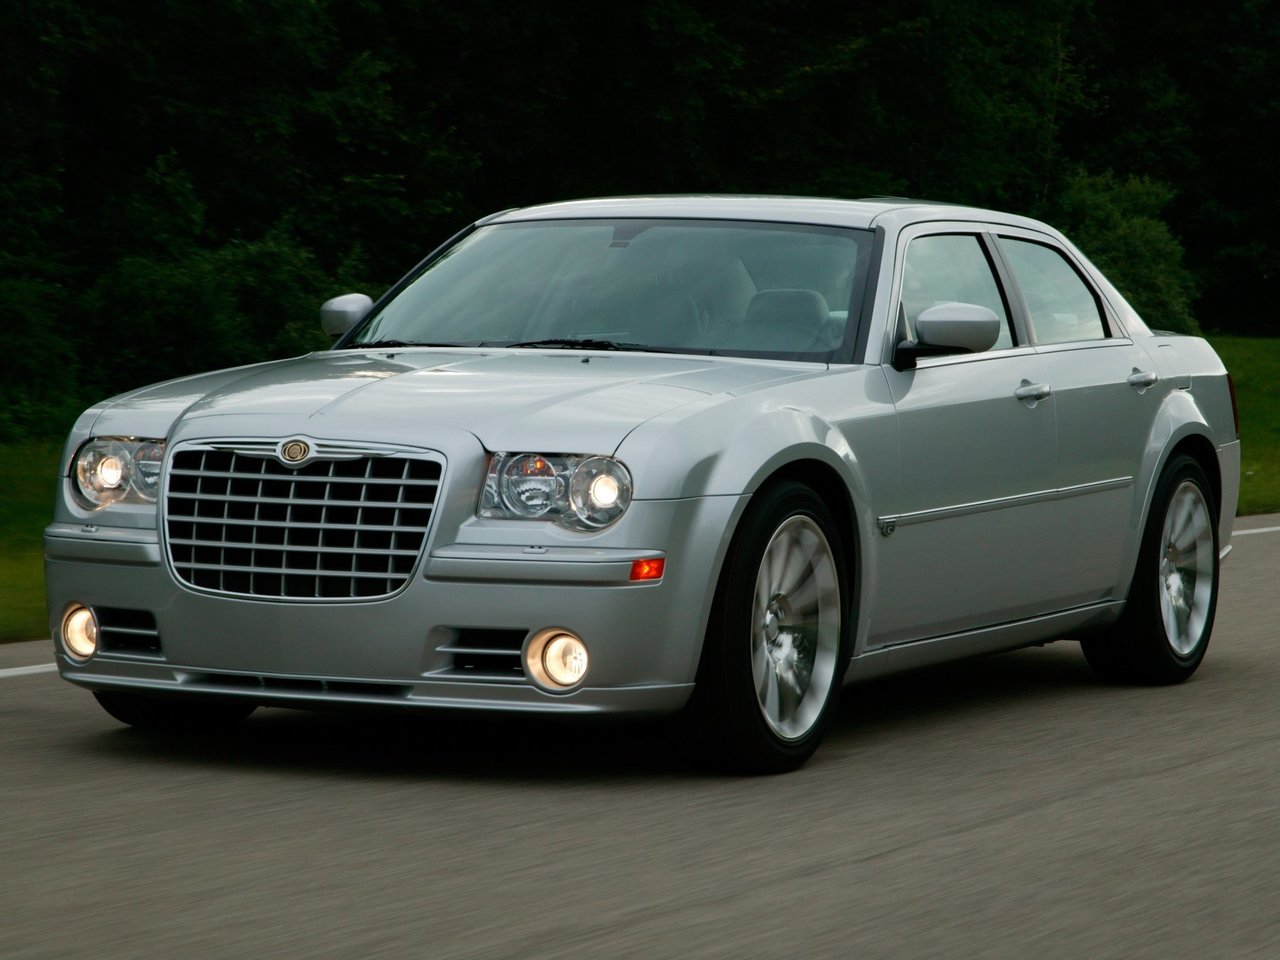 Расход газа одной комплектации седан SRT8 Chrysler 300C. Разница стоимости заправки газом и бензином. Автономный пробег до и после установки ГБО.